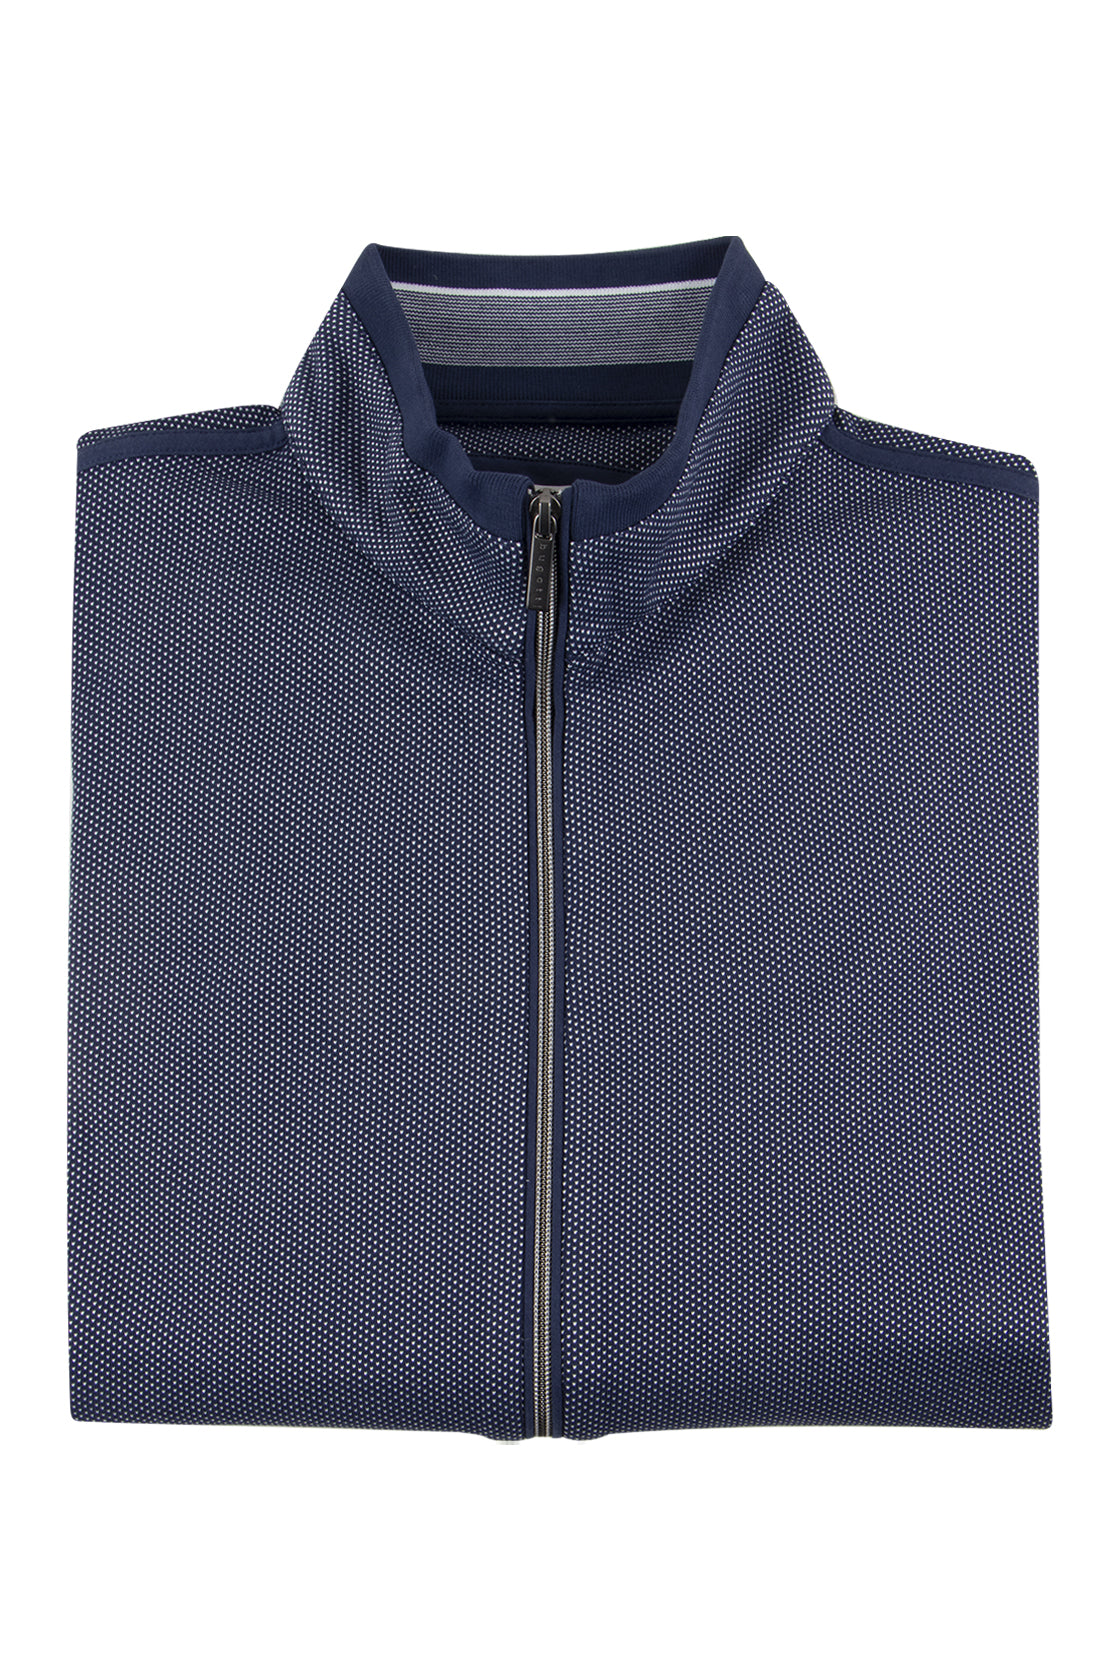 Bugatti Full Zip Sweater Navy –